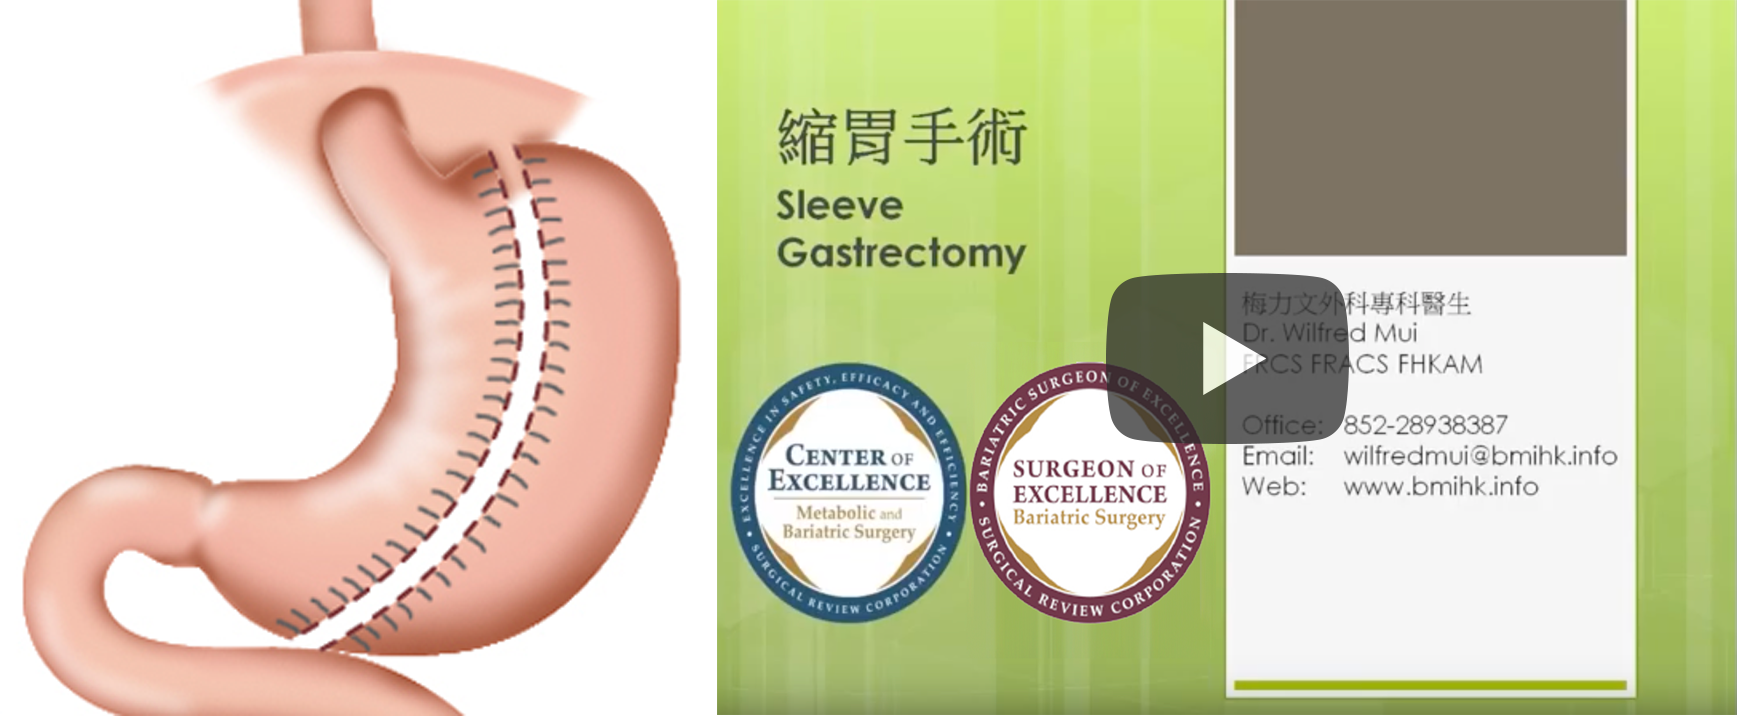 縮胃手術 Sleeve Gastrectomy